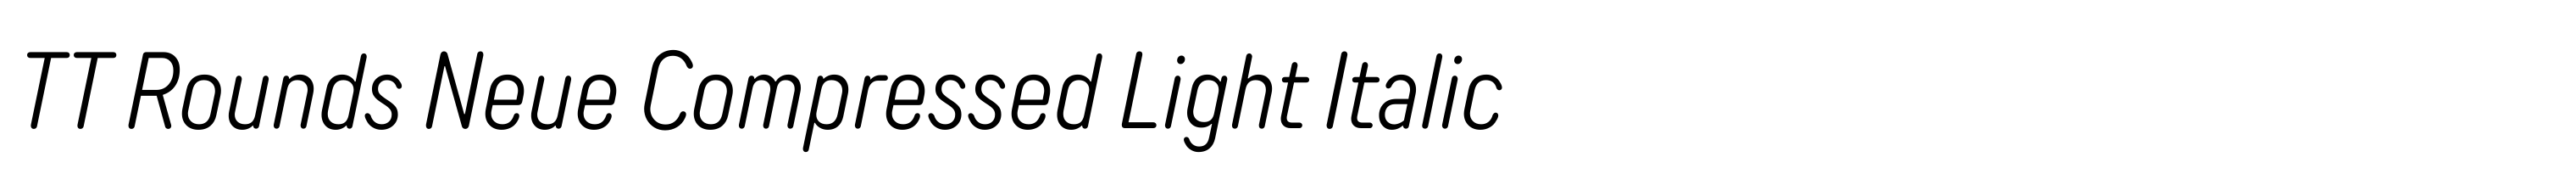 TT Rounds Neue Compressed Light Italic